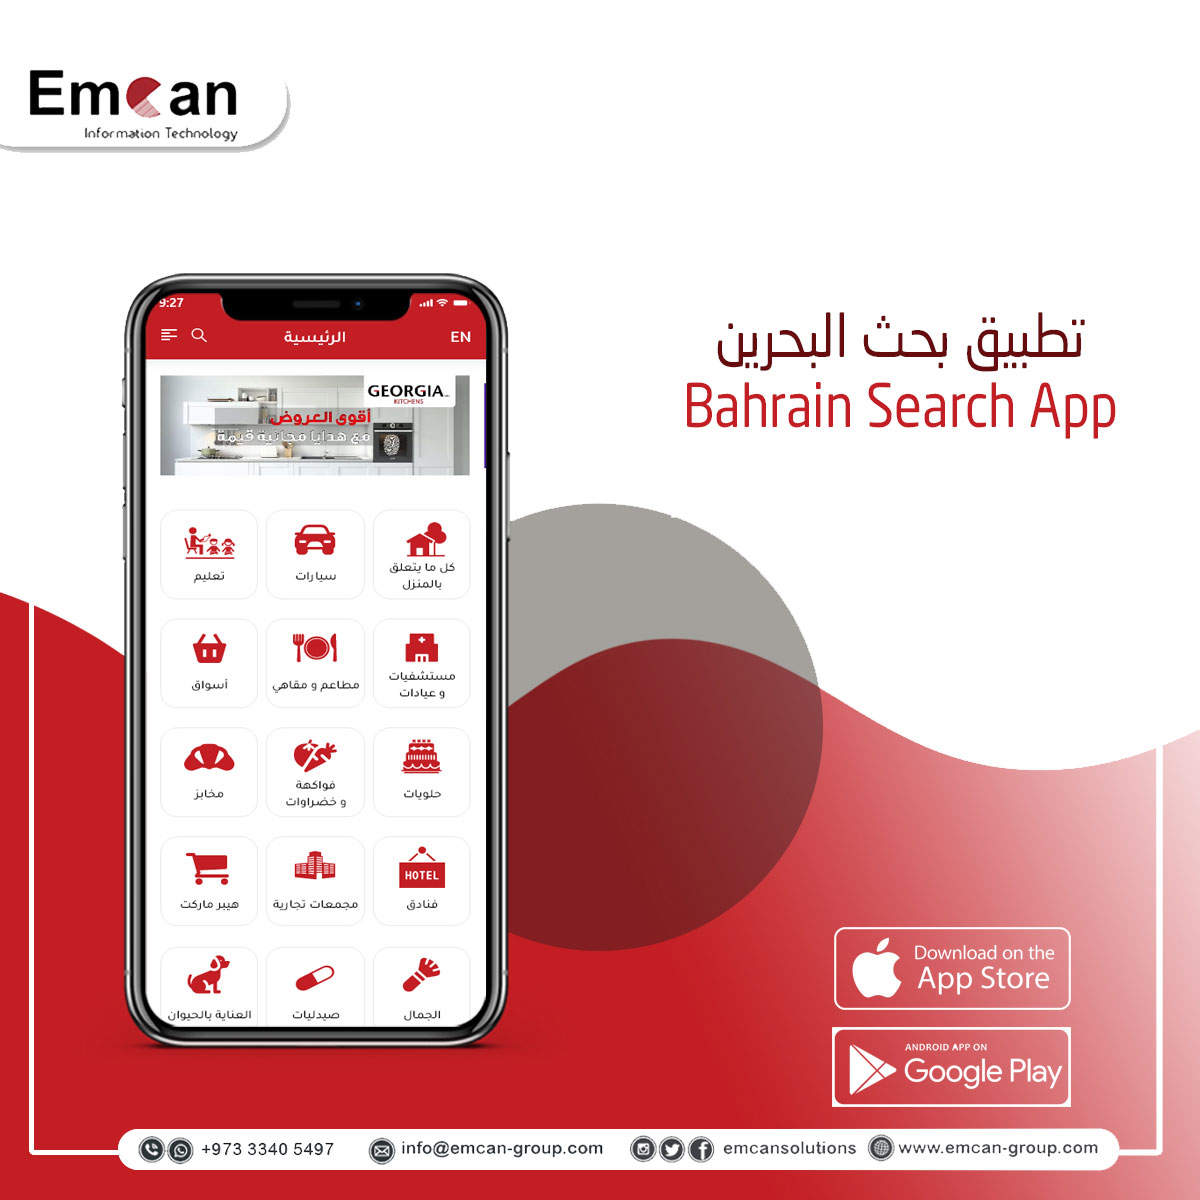 Bahrain Search